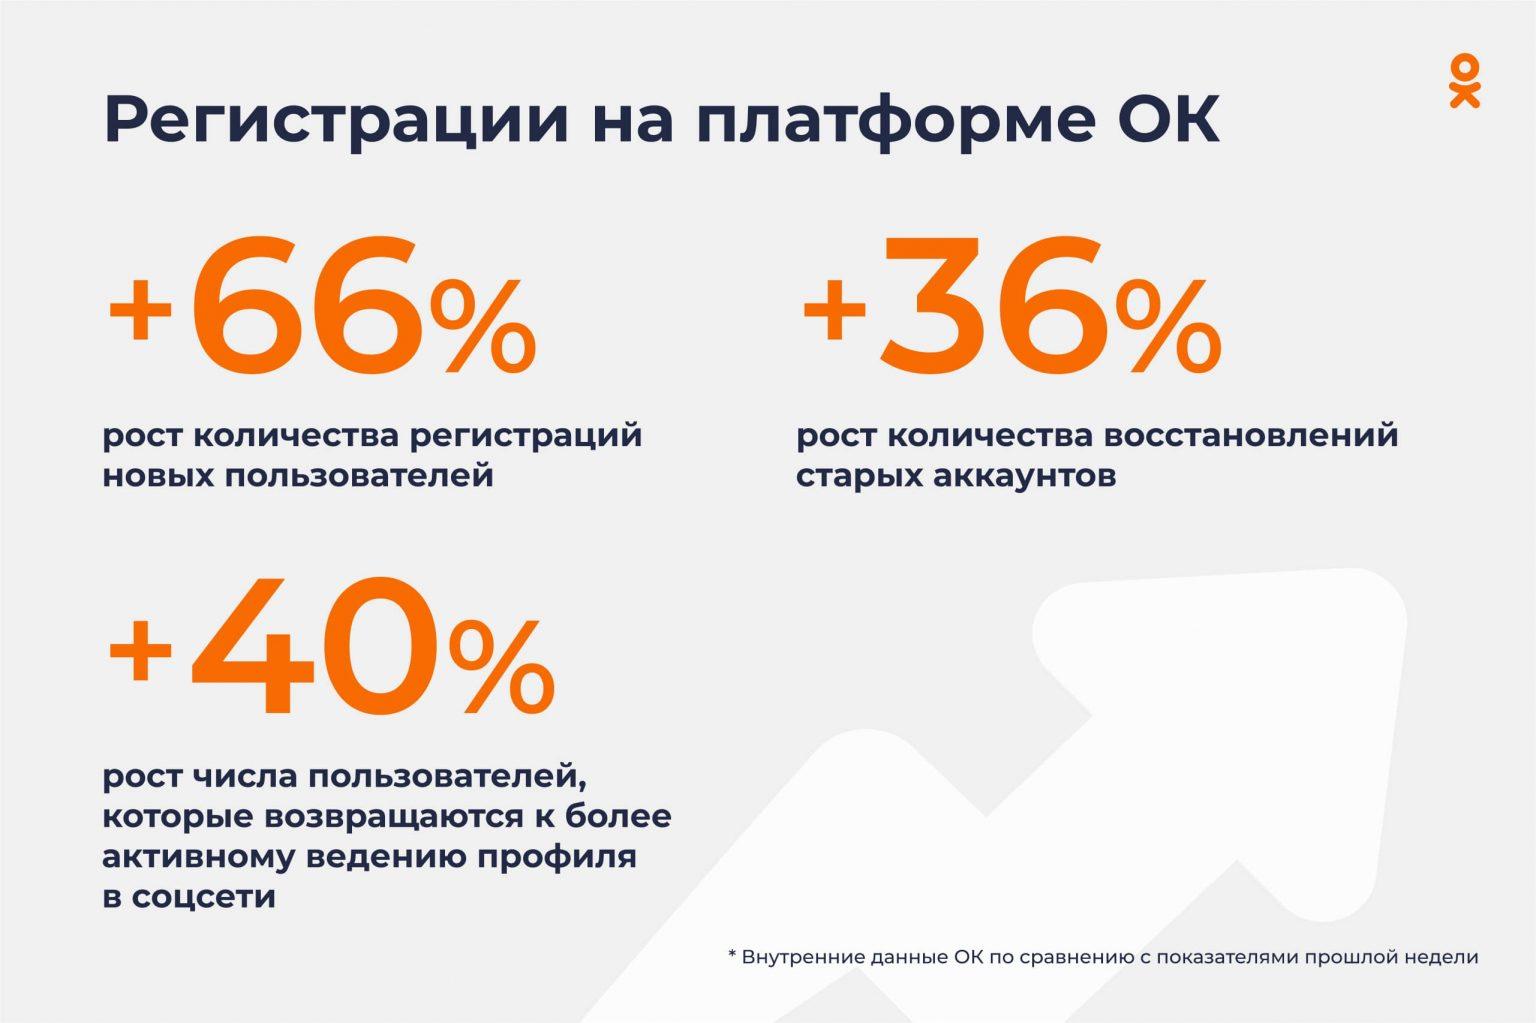 «Одноклассники» показали значительный рост в марте 2022 года. Источник: Insideok